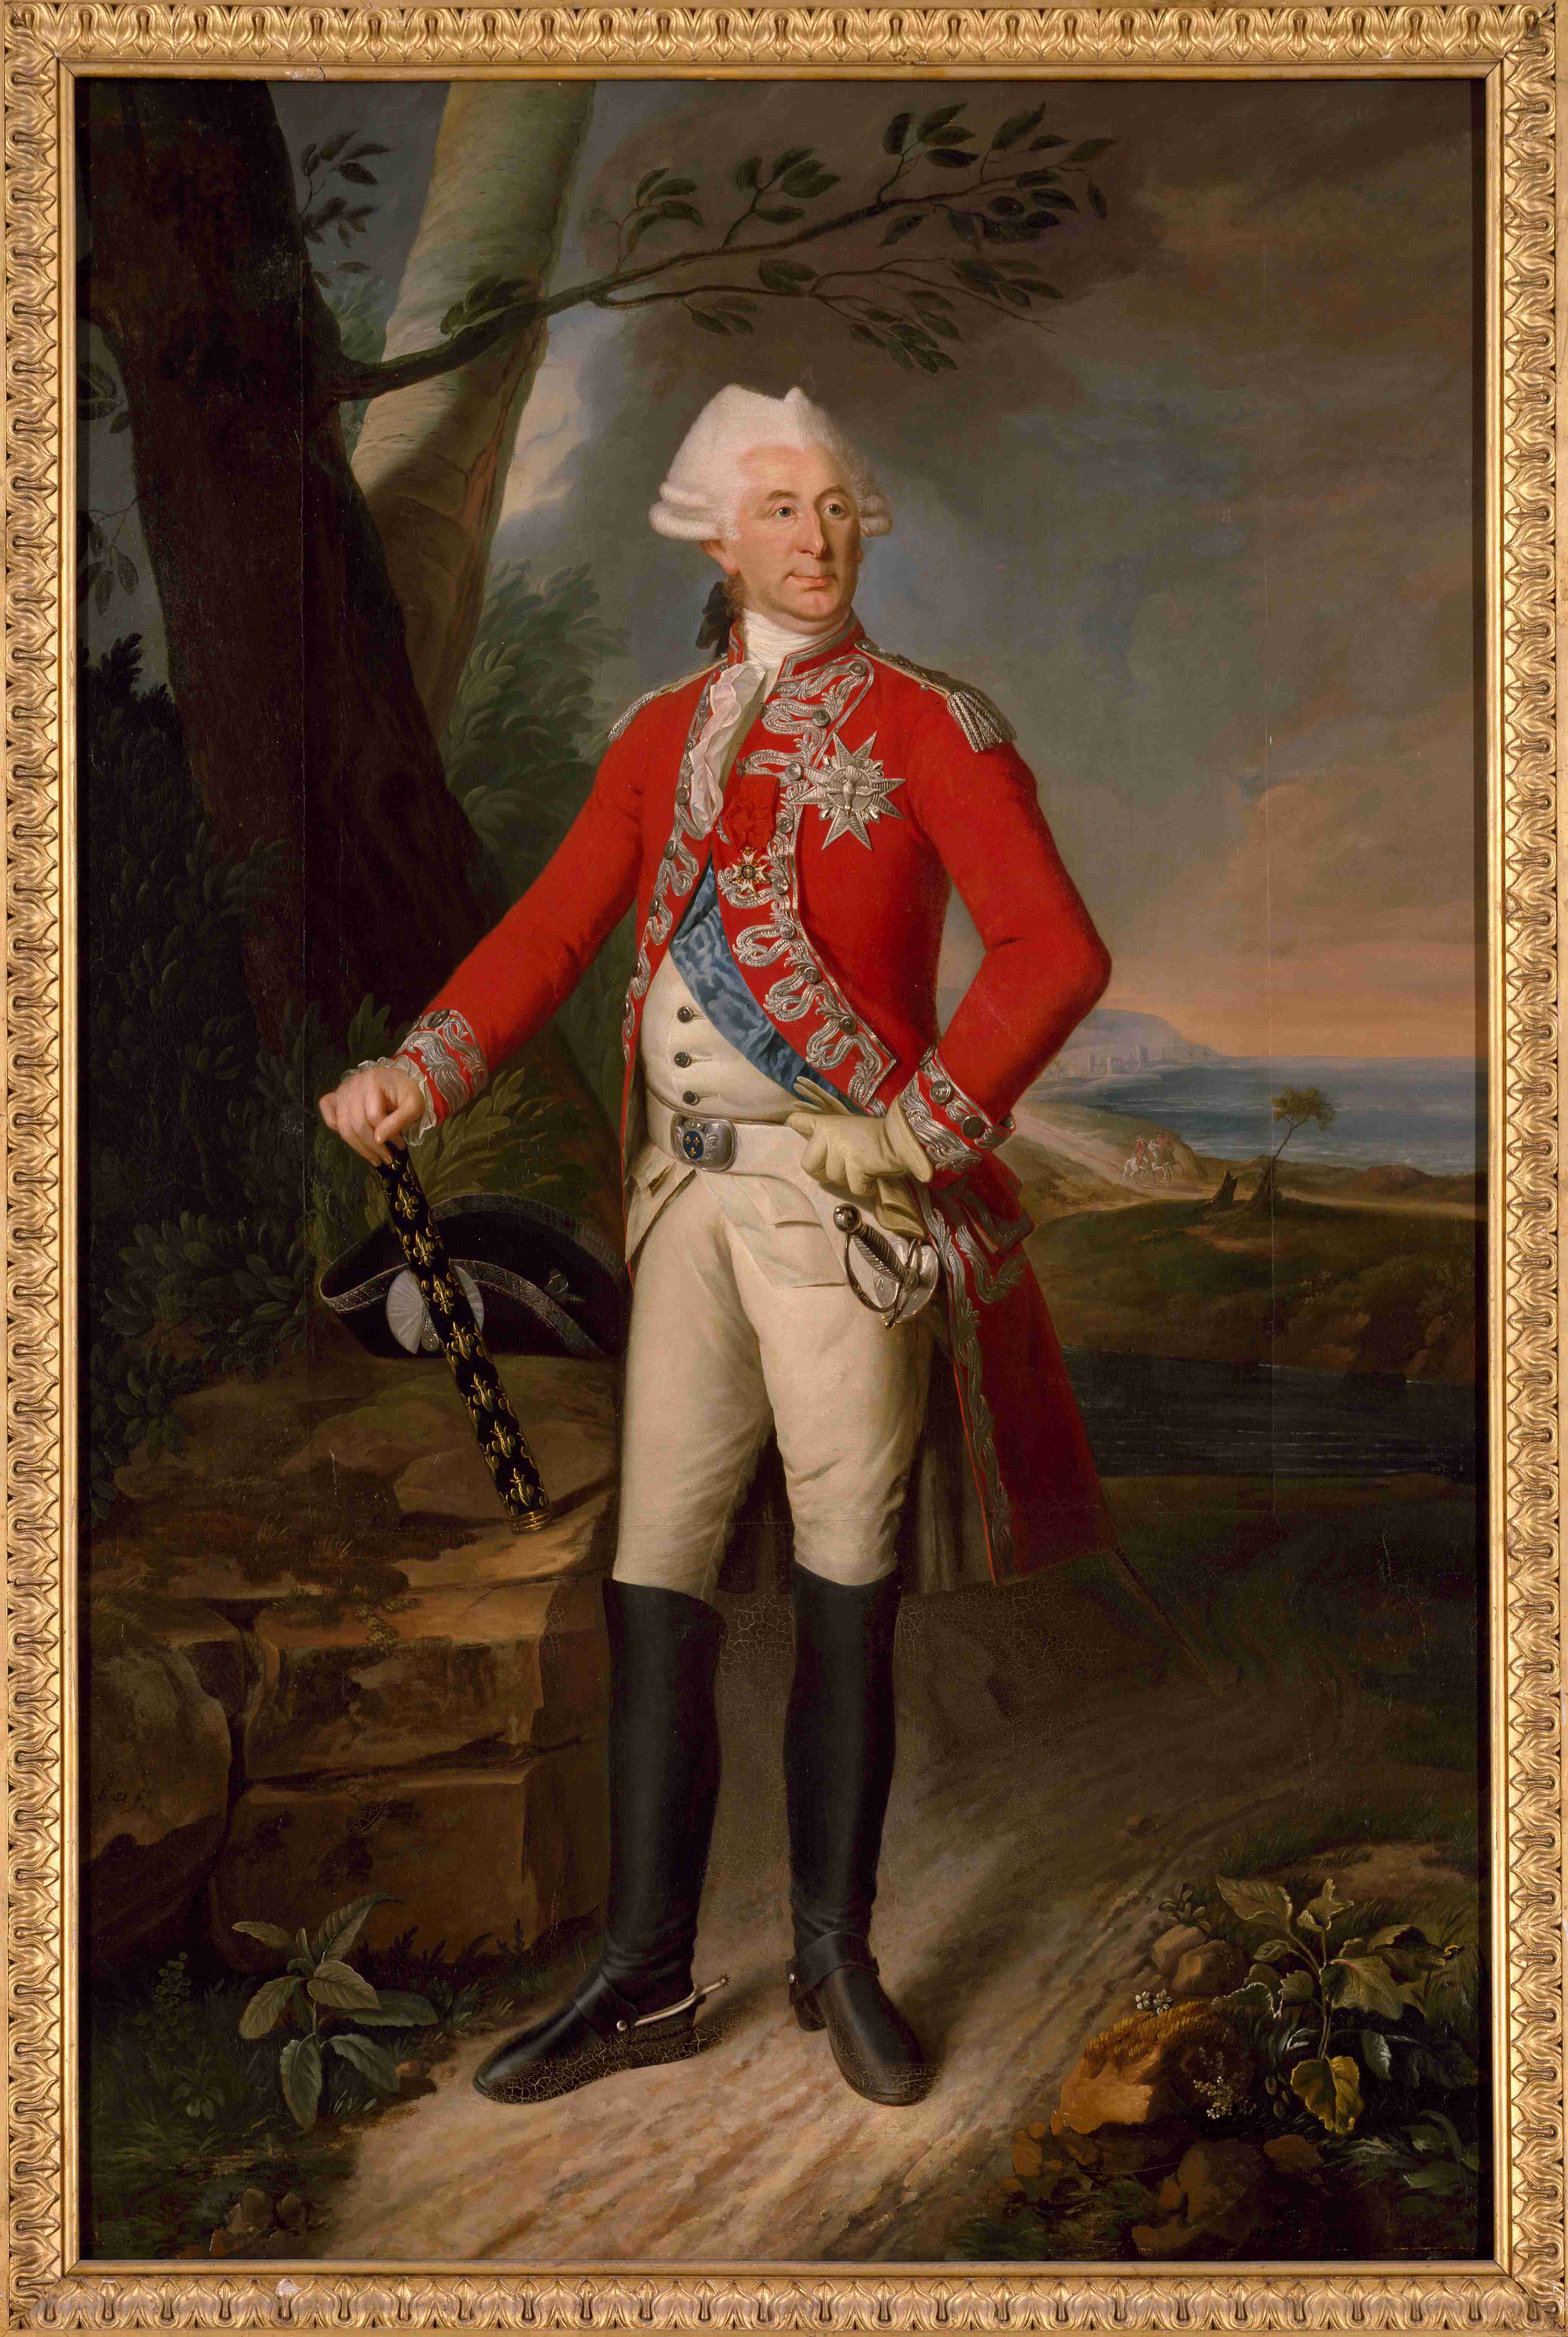 Joseph Boze, Portrait en
pied de Charles-Eugène-Gabriel de La Croix (1727-1801), marquis de Castries,
Maréchal de France en 1783. Joseph Boze
(1745-1826). Versailles, châteaux de Versailles et de Trianon